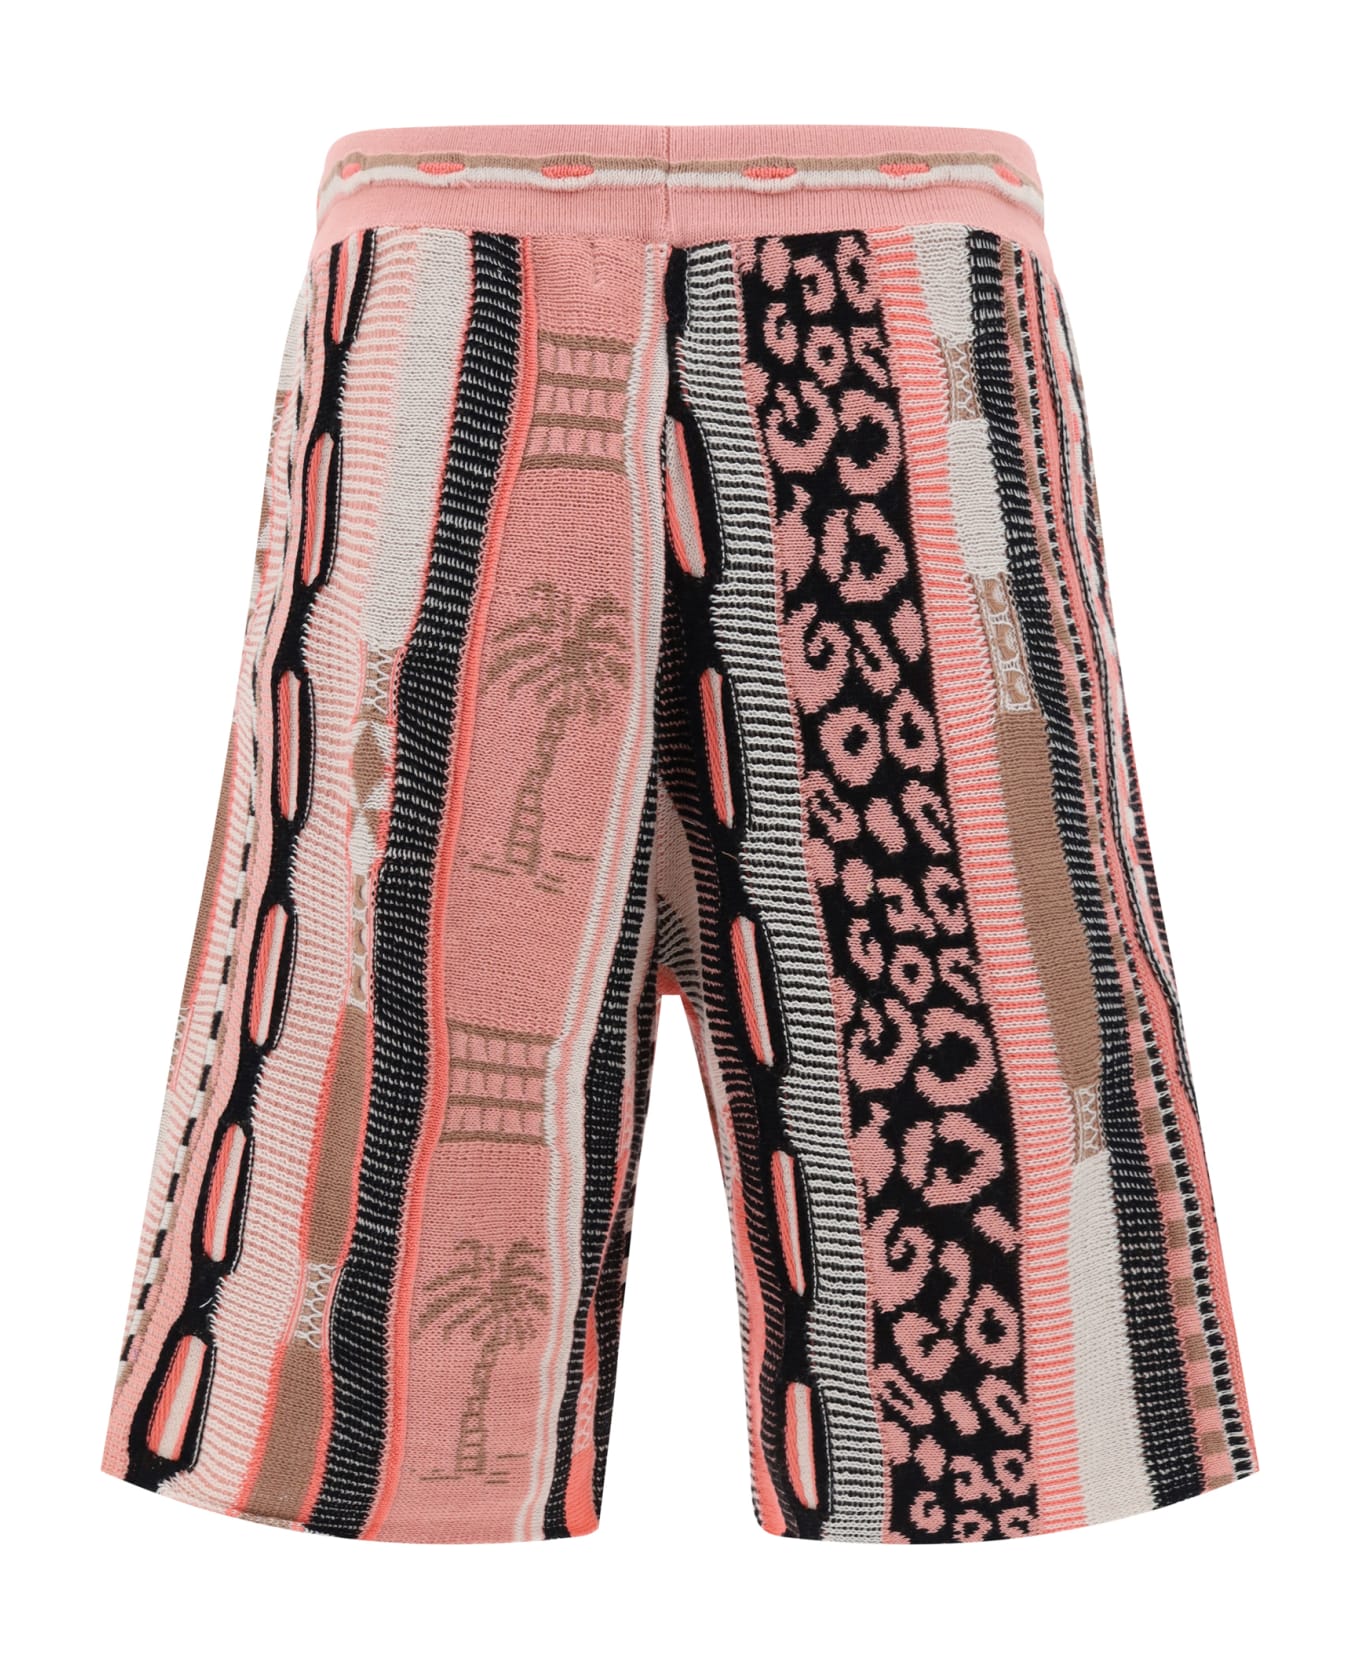 Laneus Shorts - Rosa/pink